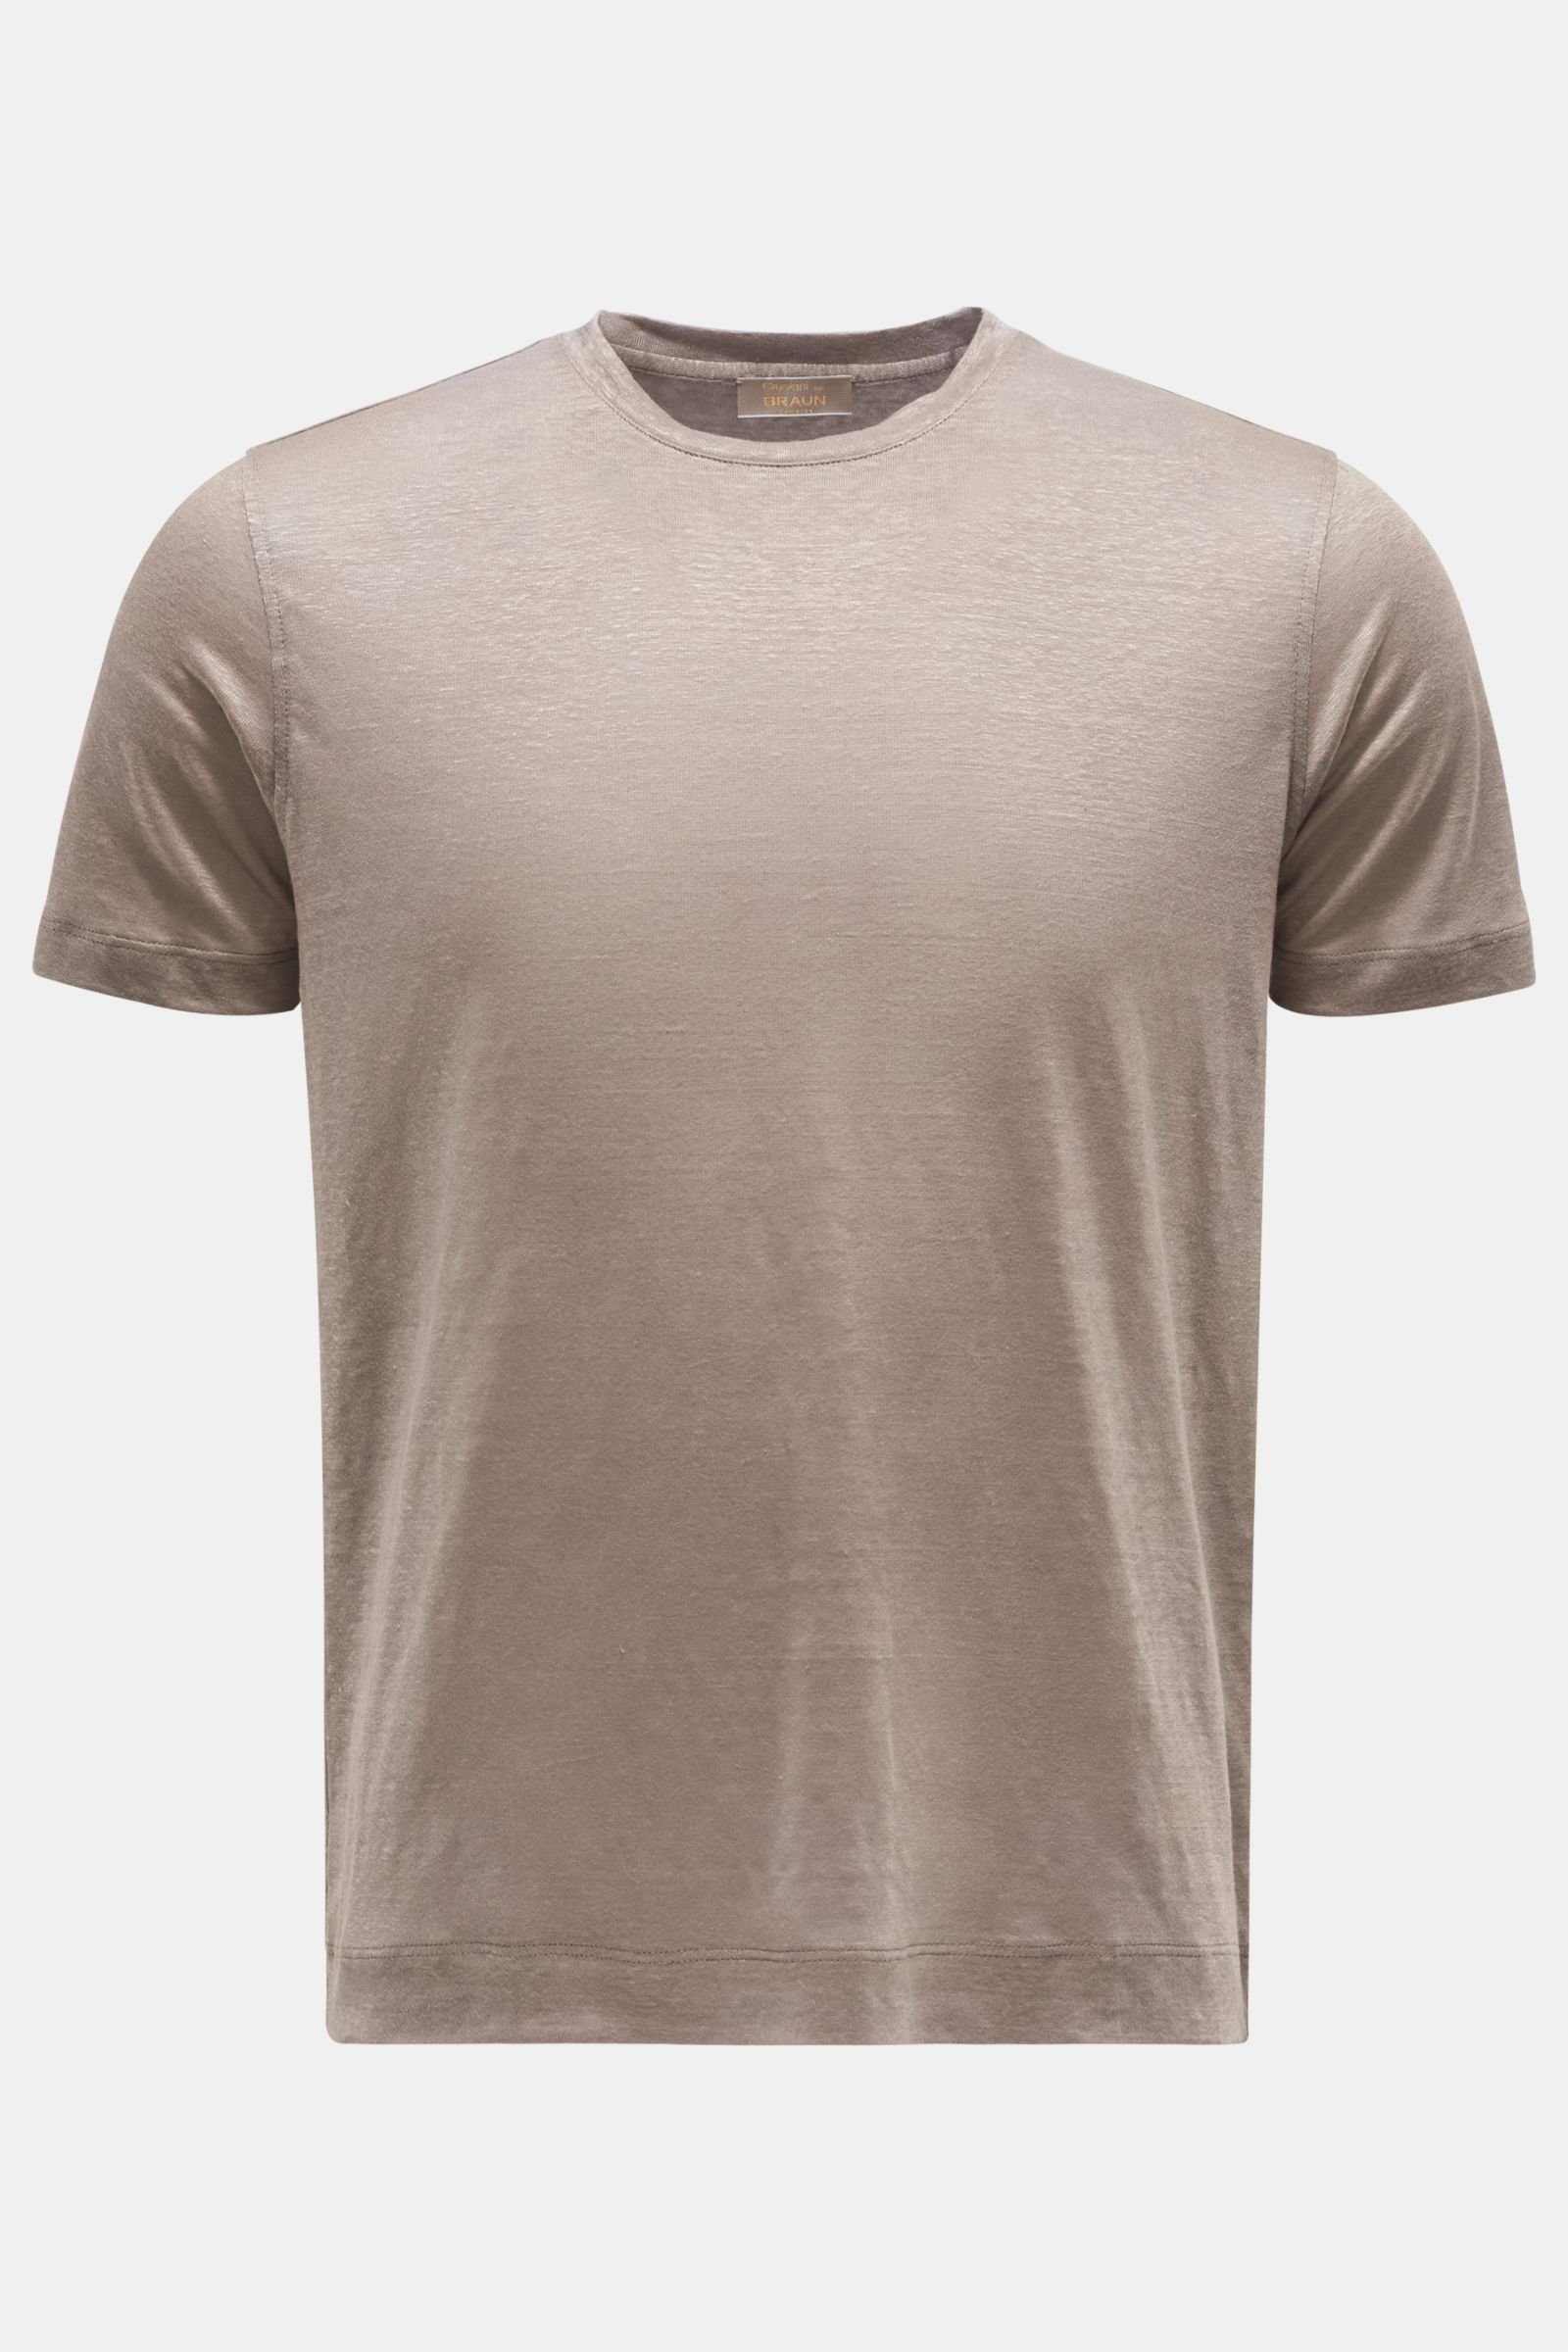 Leinen Rundhals-T-Shirt graubraun